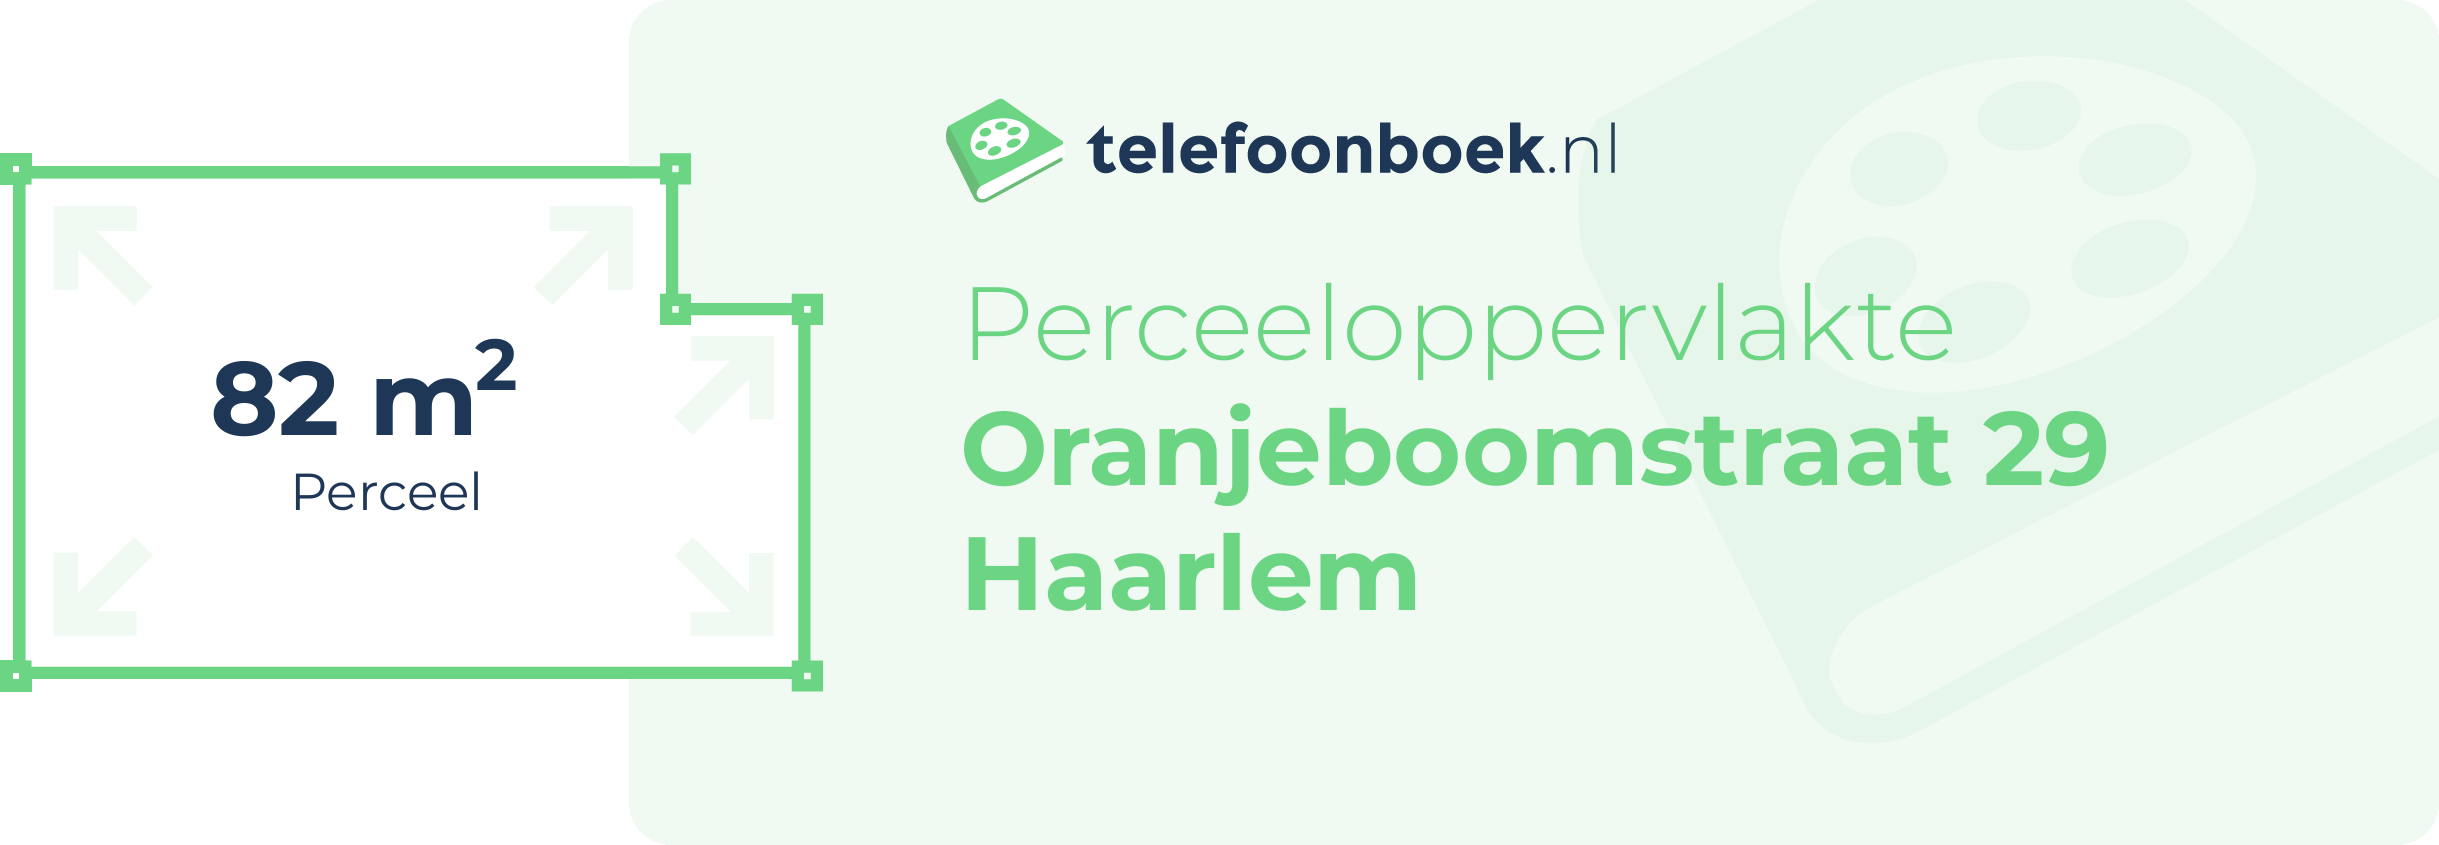 Perceeloppervlakte Oranjeboomstraat 29 Haarlem